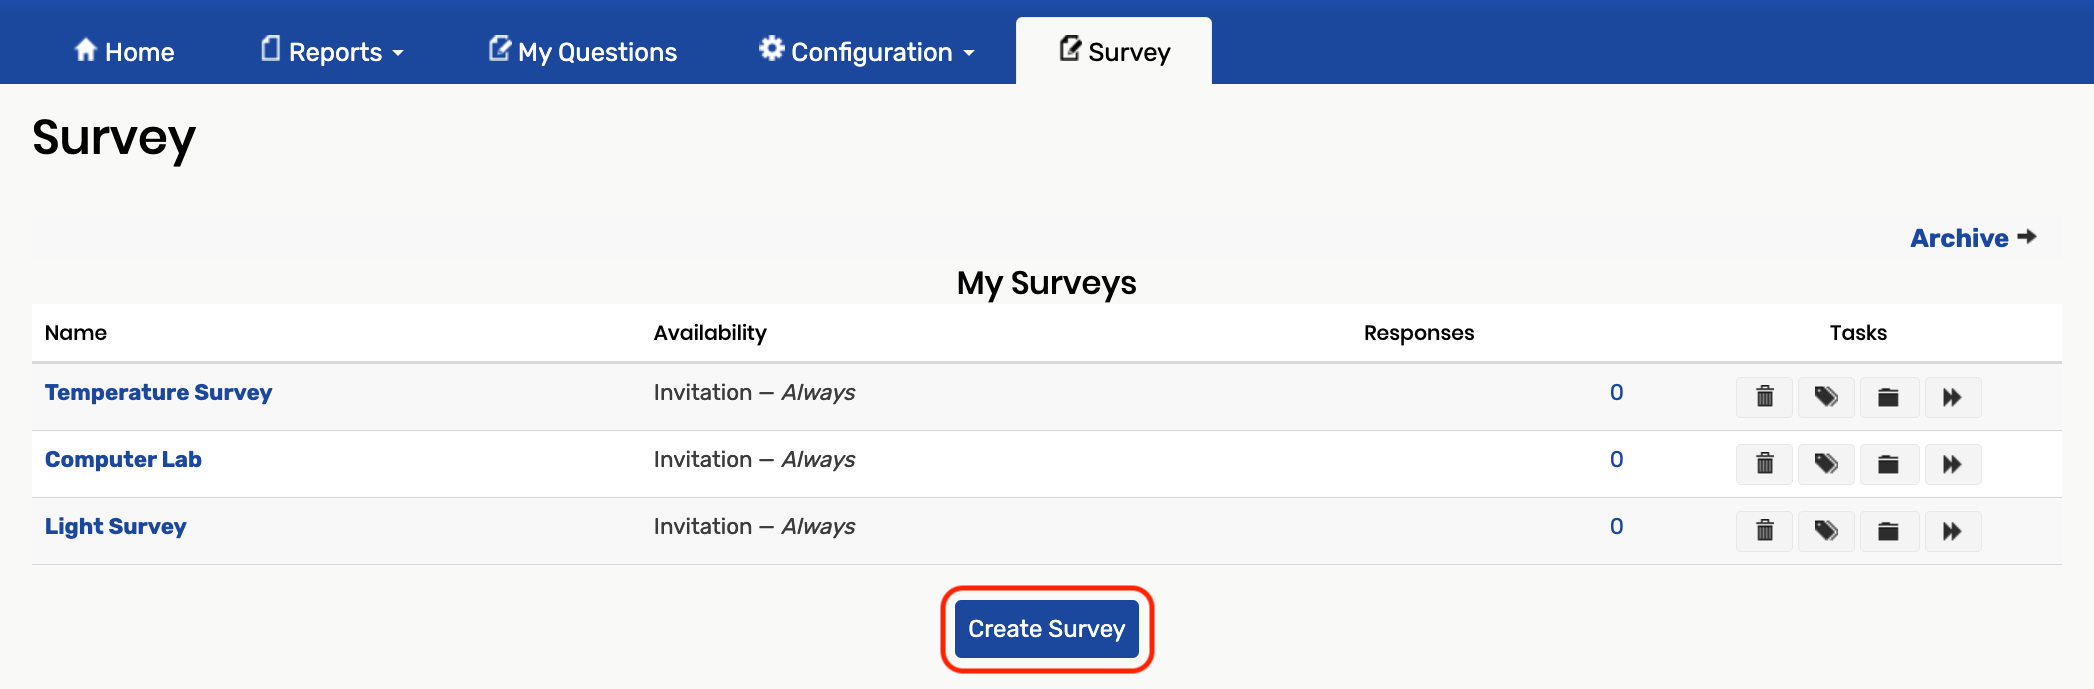 Create survey button under survey list